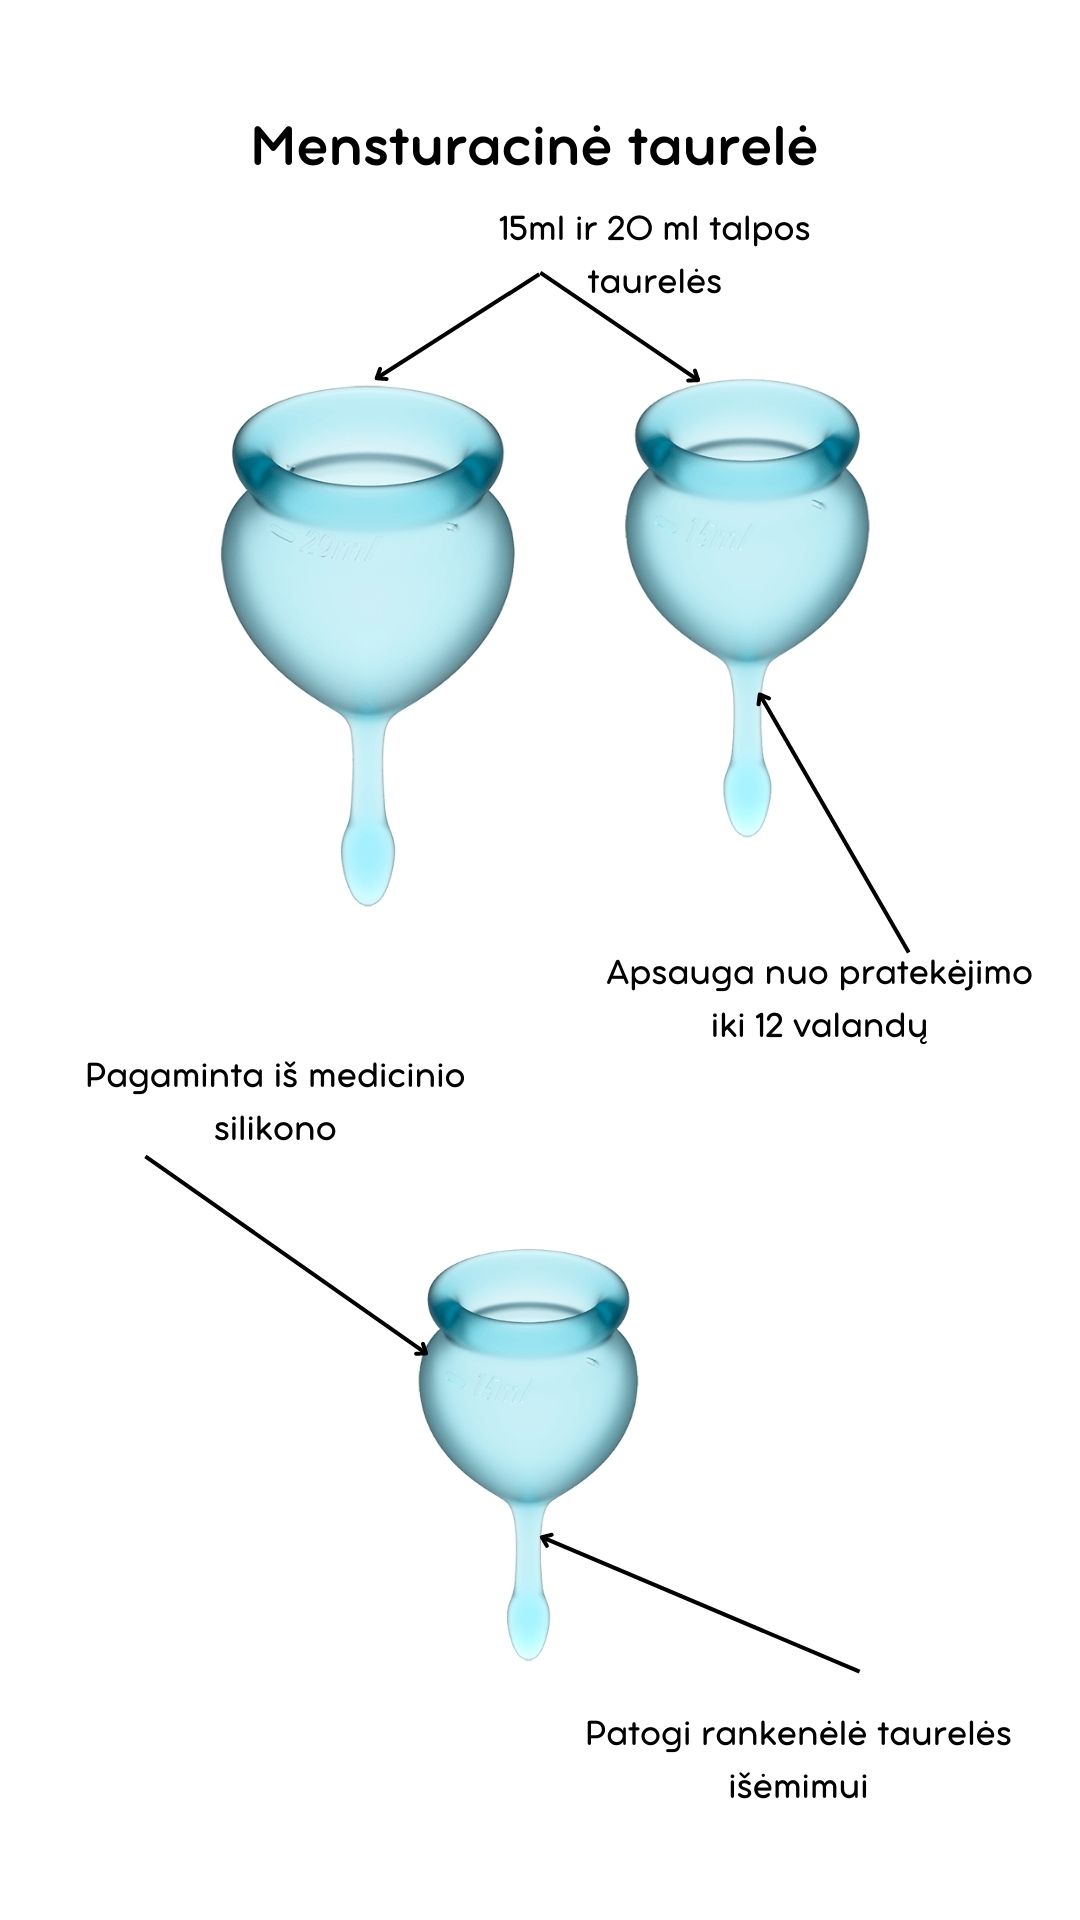 Menstruacinės taurelės Feel Good - Light blue 
Šviesiai mėlynos spalvos menstruacinės taurelės „Feel Good“ iš „Satisfyer“ yra puiki, ekologiška ir ekonomiška alternatyva tamponams ar higieniniams įklotams. 
Rinkinyje yra dvi skirtingo tūrio, iš medicininio ir kūnui saugaus silikono pagamintos taurelės, kurias paprasta įsidėti. 
Šios higieniškos, medicininės silikoninės ir lengvai įdedamos menstruacinės taurelės, pasižyminčios žaismingu dizainu, susideda iš dviejų dalių. 15 ml  ir 20 ml talpos, todėl tinka lengvesnėms ir sunkesnėms dienoms. 
Pailgas galiukas skirtas tam, kad taurelę būtų patogu ištraukti. 
Menstruacijų pradžioje galite rinktis 20 ml talpos taurelę, o pabaigoje – 15 ml. 
  
Kodėl rinktis menstruacinę taurelę? 
Jokio nemalonaus kvapo ir baimės, kad neturite susavimi įklotų! Su menstruacine taurele galite laisvai sportuoti, maudytis, miegoti ar bėgioti. 
Tai yra ekologiška alternatyva, kuri padeda saugoti planetą. 
Sutaupysite! Menstruacinė taurelė gali tarnauti kelis metus, todėl tai yra ekonomiška alternatyva su kuria sutaupysite iki 90% išlaidų, kurias skiriate įklotams ir tamponams. 
Jokio pratekėjimo iki 12 valandų! Menstruacinę taurelę galite įsidėti ryte, o išsiimti ir ištuštinti tik vakare.  
Kas gali naudoti menstruacinę taurelę? 
Daugiau ir mažiau kraujuojančios.  
Gimdžiusios ir negimdžiusios moterys.  
Moterys, neturėjusios lytinių santykių.  
Ar taurelė nepratekės? 
Tam, kad menstruacinė taurelė nepratekėtų, ji turi tinkamai išsiskleisti viduje. Tam, kad įsitikintumėte, jog taurelė tinkamai atsidarė, galite su pirštu perbraukti per kraštelį ir patikrinti, ar nesusiformavo raukšlės. Jei taurelė teisingai atsidarė, bus susidaręs vakuumas.  
Taurelė gali pratekėti, jei mėnesinės yra itin gausios, kad to nenutiktų – turite stebėti mėnesinių gausą ir rekomenduojama dažniau ištuštinti taurelę, kol suprasite kas kiek valandų jums reikia ją tuštinti ir atrasite tavo ritmą.  
Kaip ištuštinti taurelę? 
Taurelę rekomenduojama ištuštinti kas 12 valandų ar dažniau, jei kraujuojate gausiau. Ištuštinus taurelę ją nuplaukite po tekančiu vandeniu ir dezinfekuokite.  
Kaip įsidėti menstruacinę taurelę? 
Prieš naudojant menstruacinę taurelę, ją reikia pavirti 3-5 minutes vandenyje.  
Nusiplaukite rankas ir atsisėdusi ant unitazo praskėskite kojas. 
Spustelkite rodomuoju pirštu per vienos taurelės briaunos vidurį (taurelė bus U formos).  
Lengvai stumiant, įdėkite taurelę į makštį. 
Kaip išimti menstruacinę taurelę? 
Taurelę išsitraukti galite timptelėjusios už jos uodegėlės, o kraują išpilkite į unitazą. Taurelę praplaukite ir galite ją naudoti vėl. Pasibaigus mėnesinėms, taurelę pavirkite vandenyje.  
Šlapinantis ar tuštinantis taurelės išsiimti nereikia.